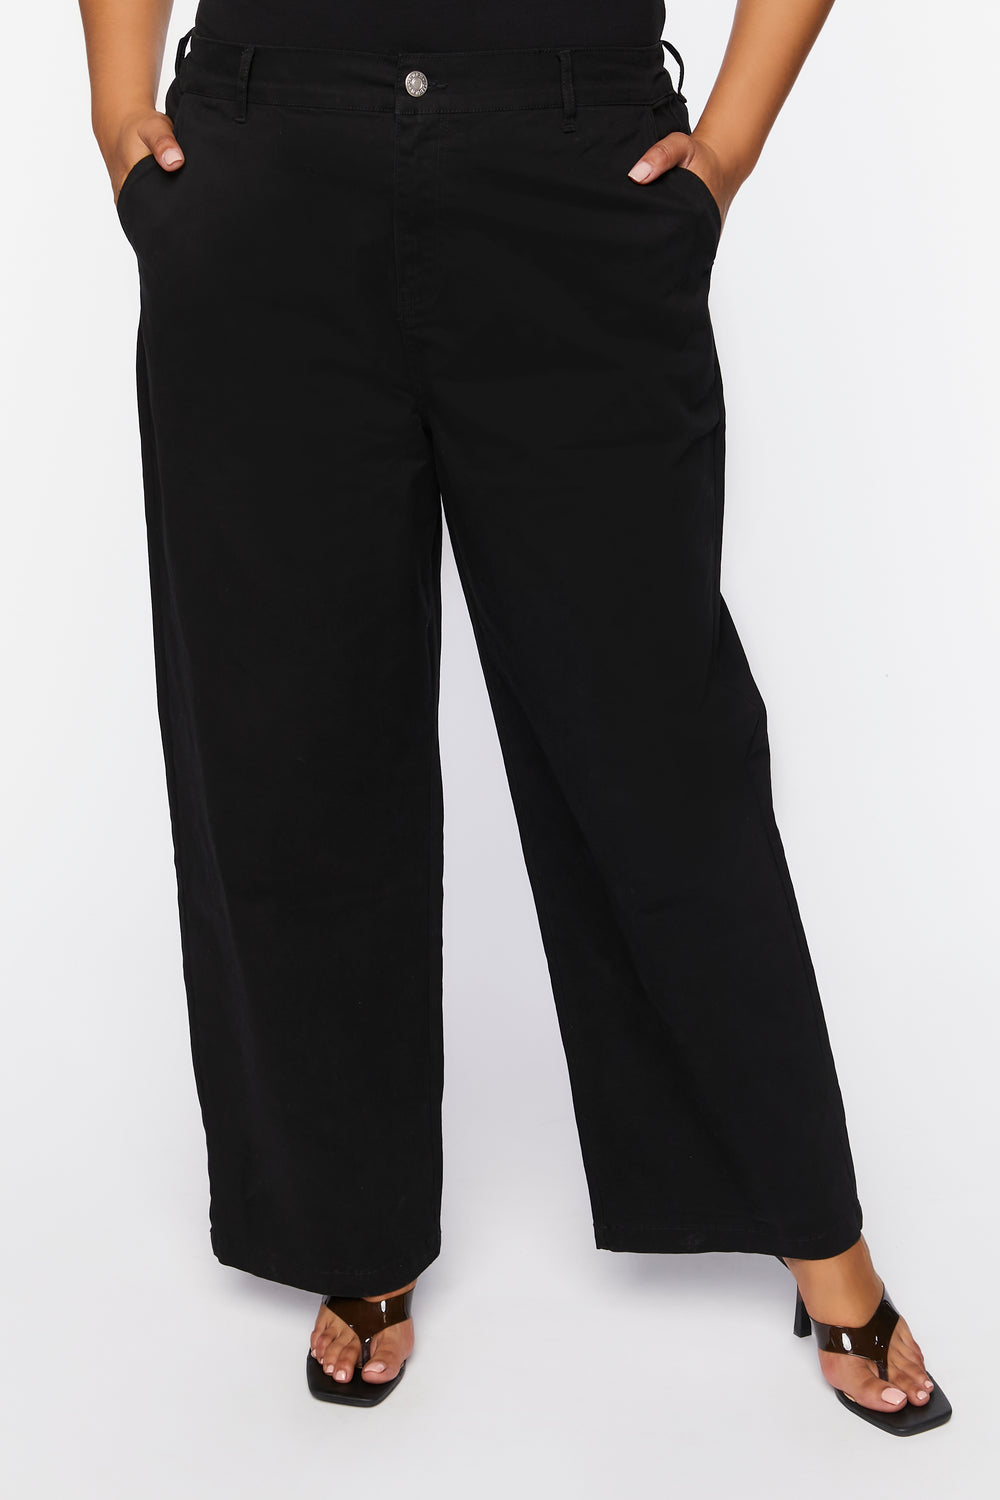 Plus Size Cotton-Blend Pants Black